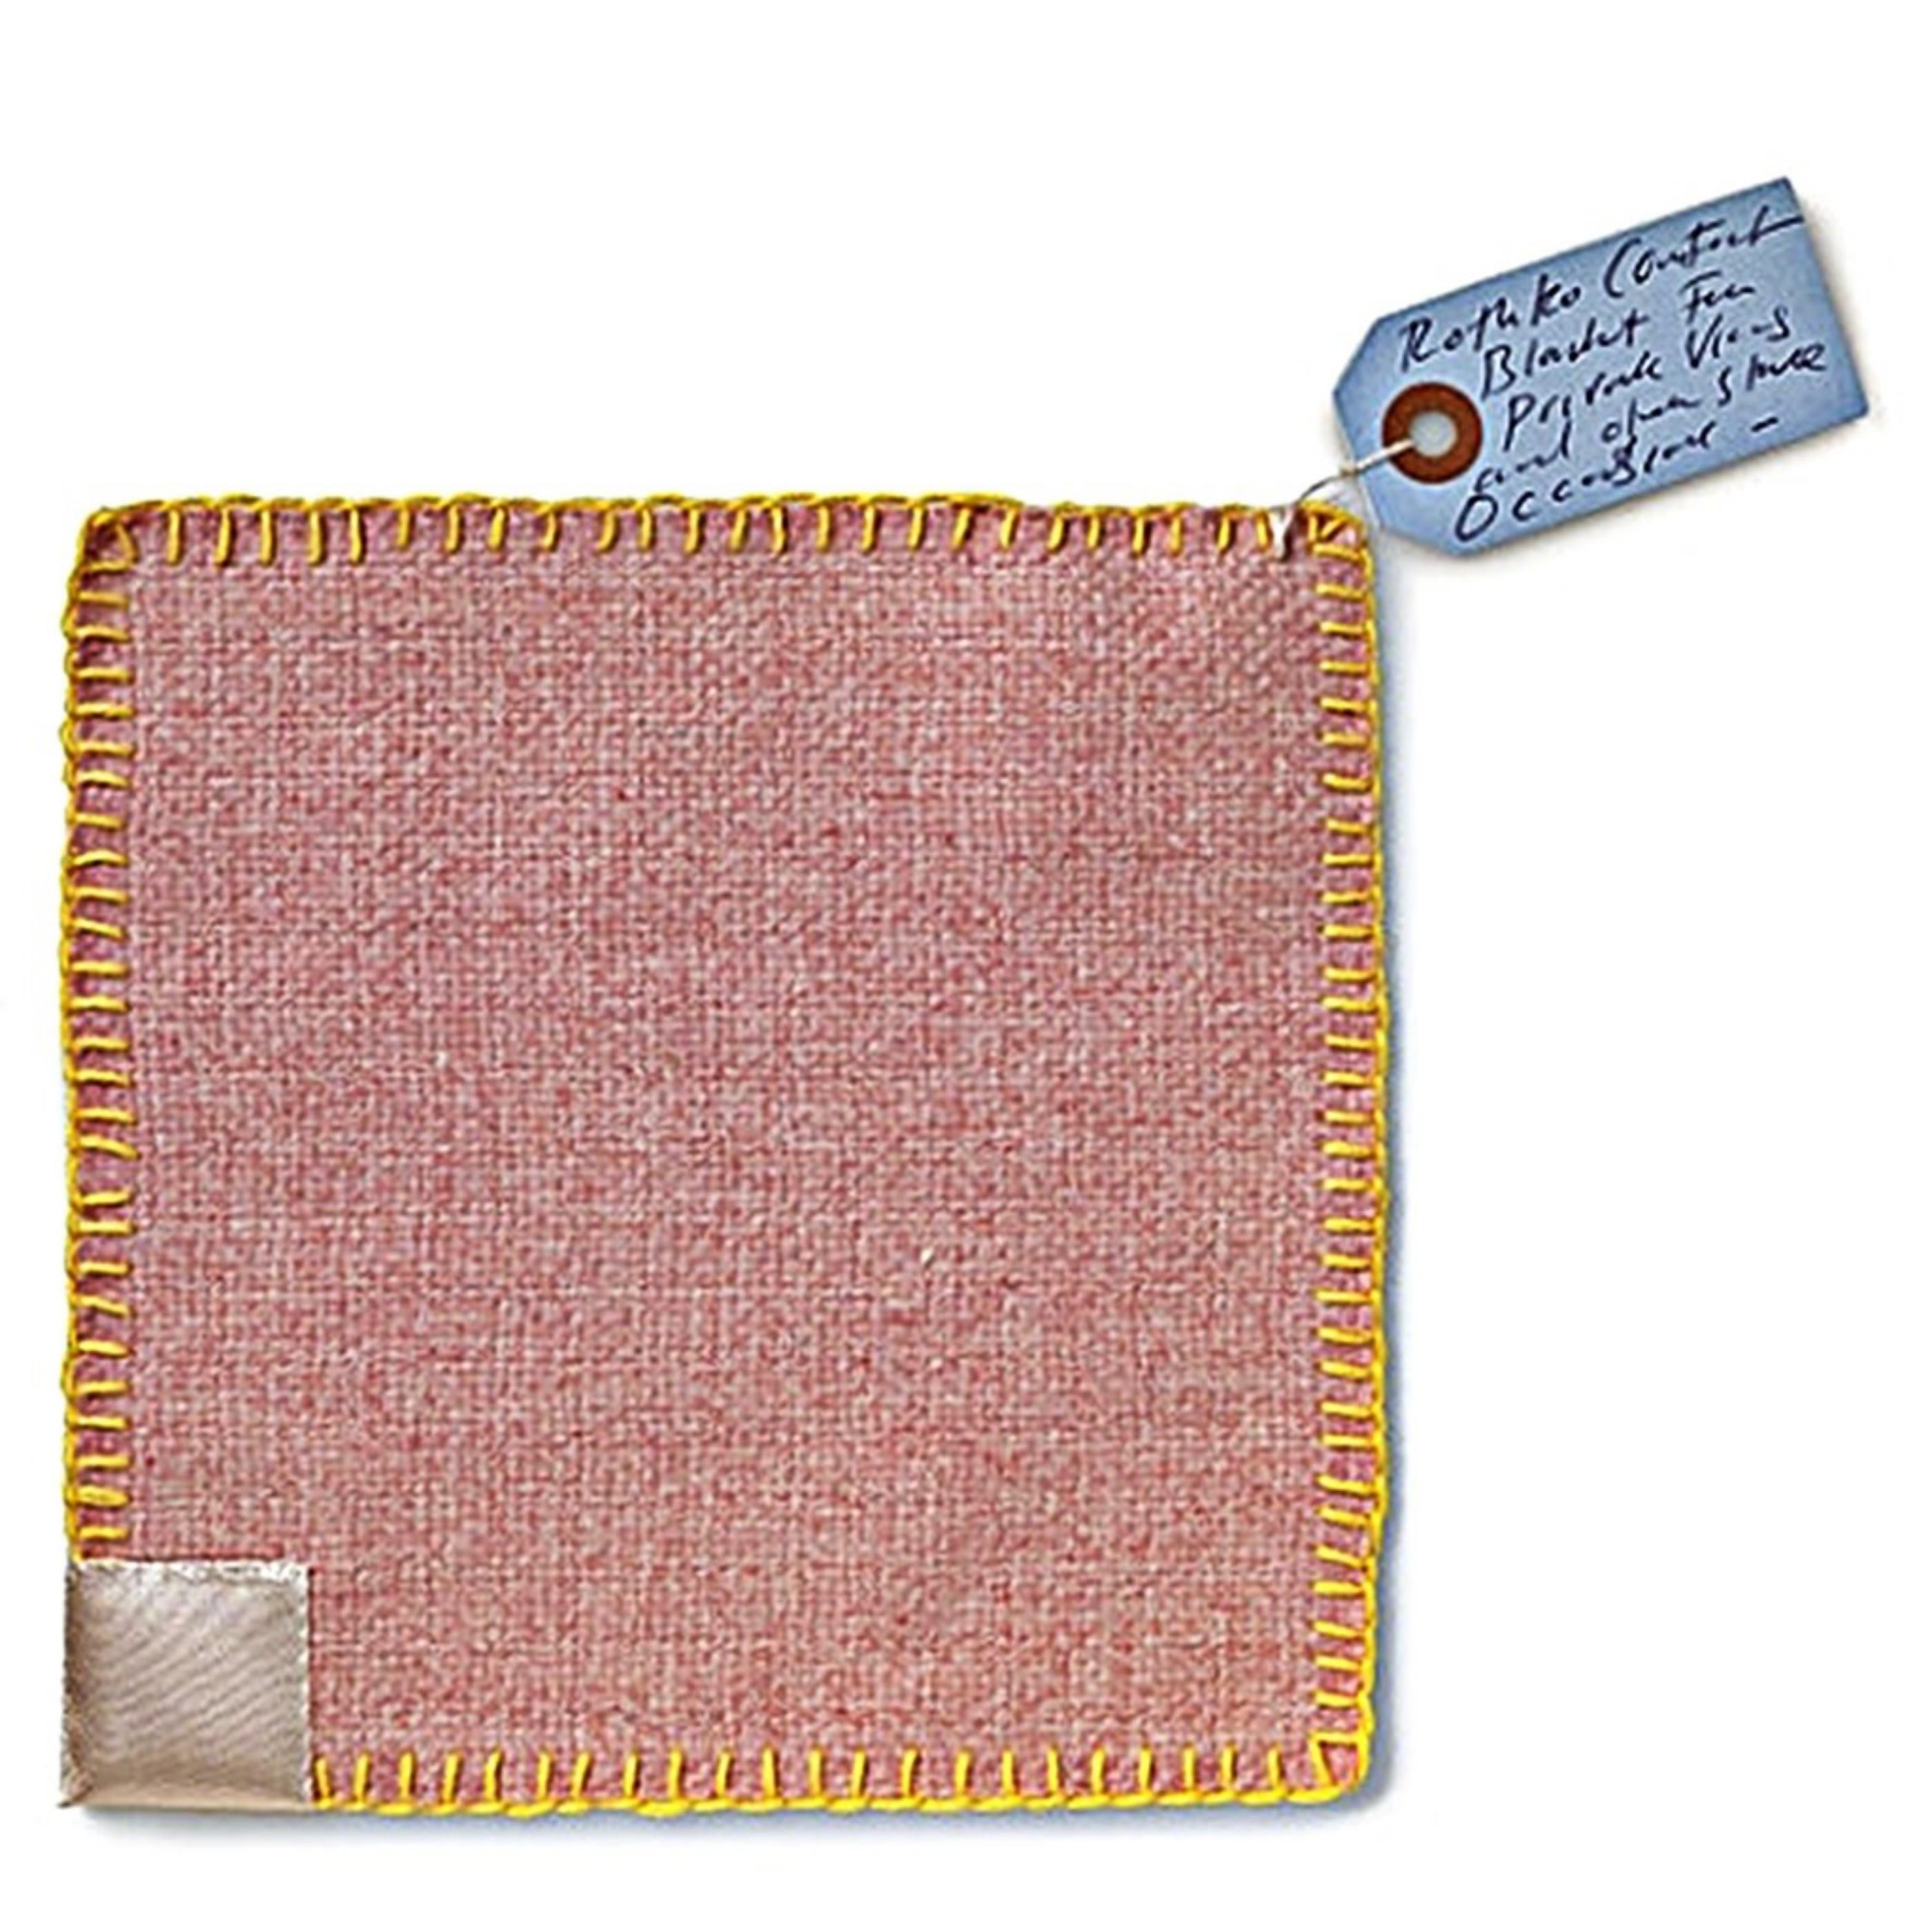 Tracey Emin Abstract Print – Rothko Comfort Blanket (Textilien in limitierter Auflage mit handsigniertem Anhänger mit Label)